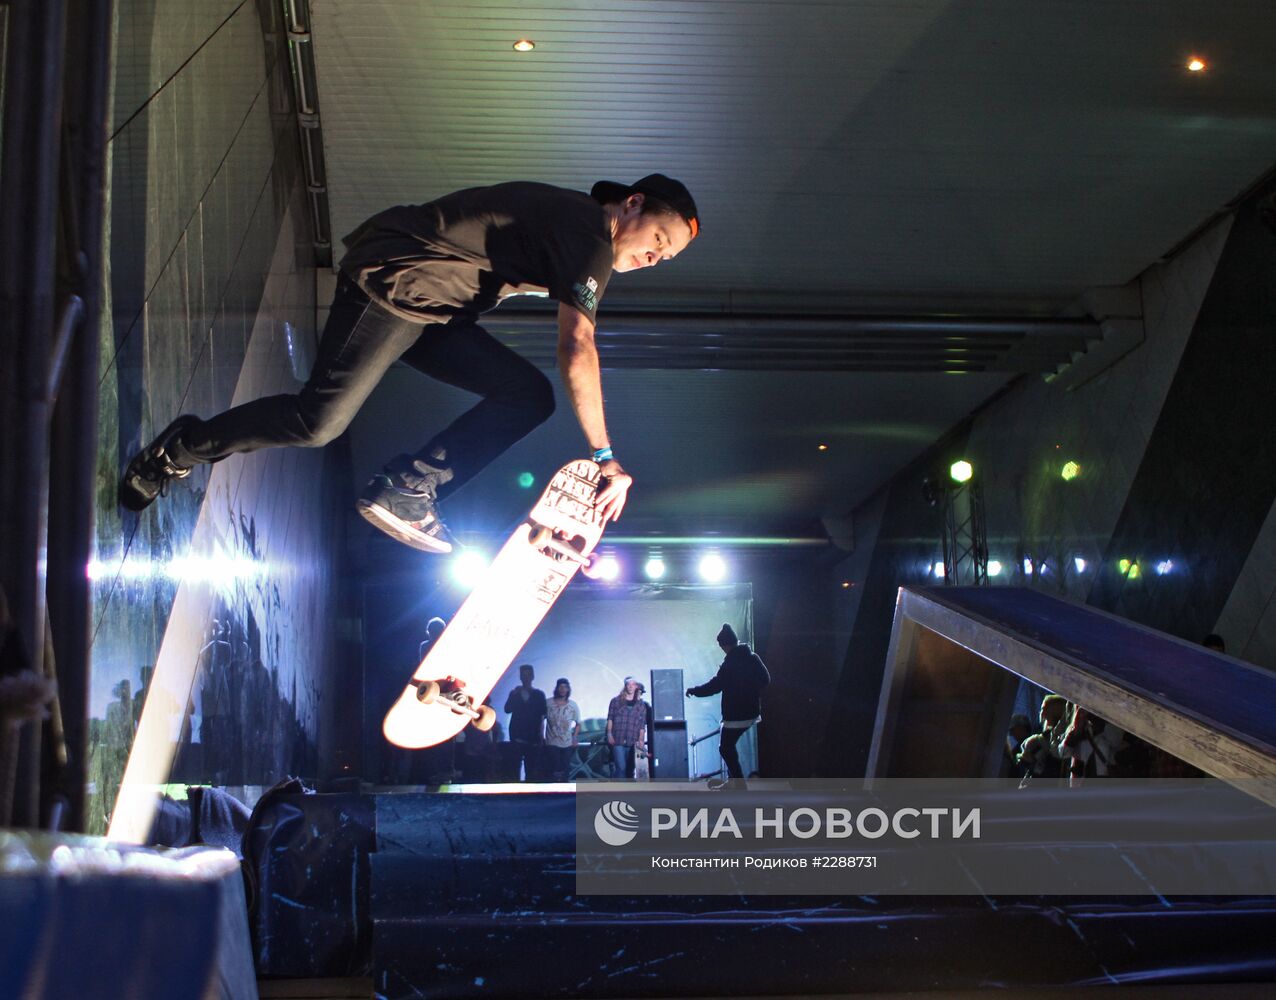 Первый чемпионат по скейтбордингу в Московском метрополитене